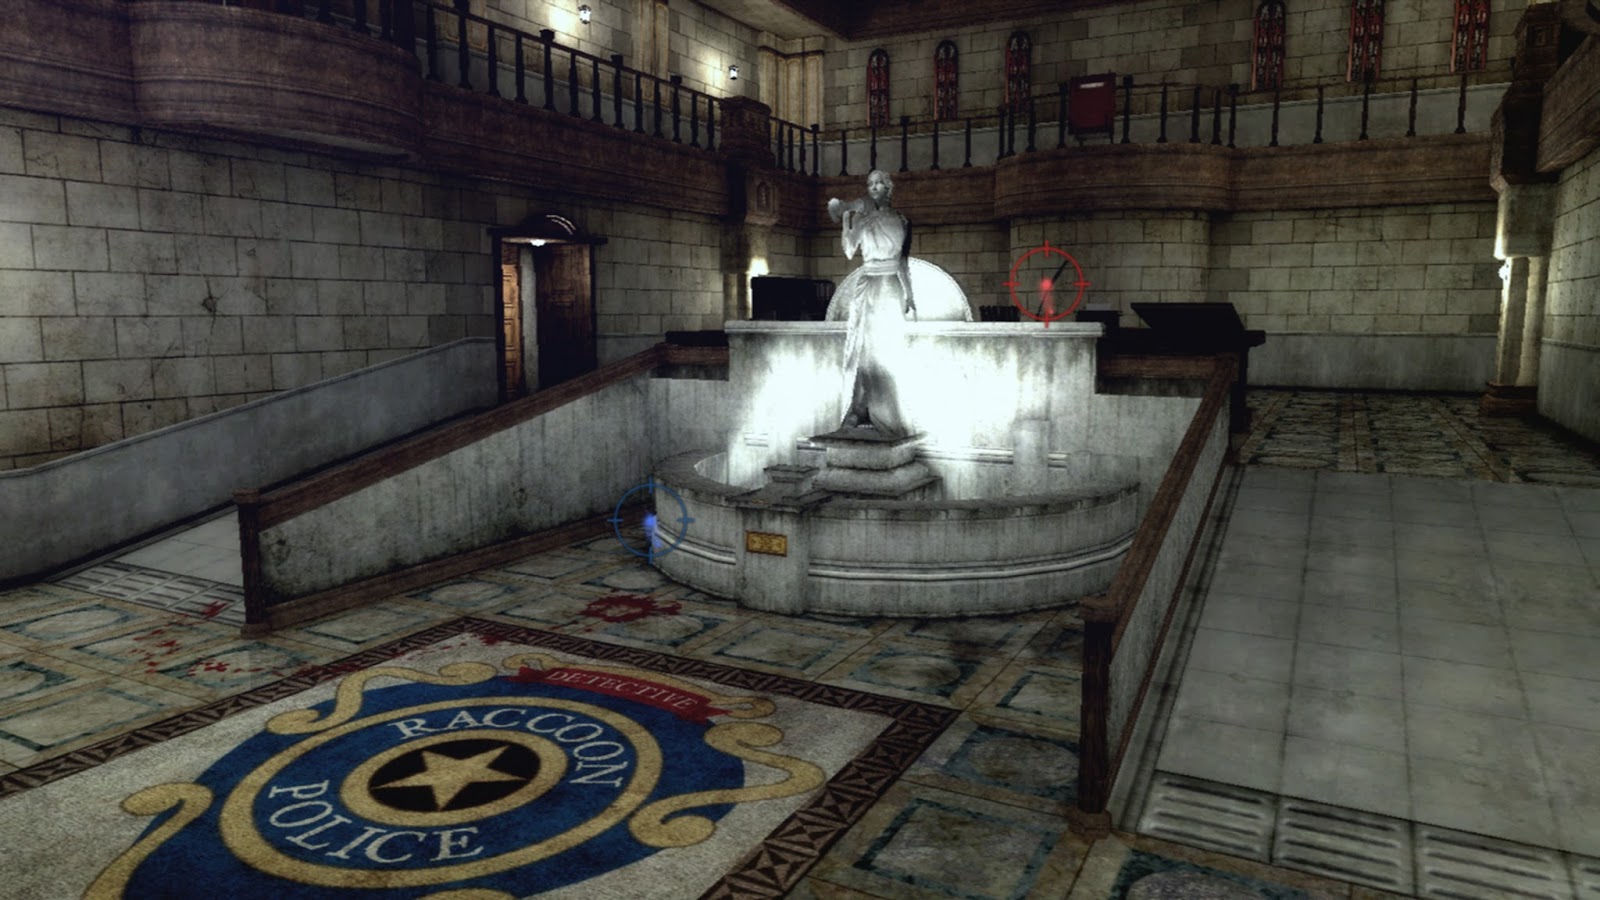 Resident Evil 2 Remake Puzzle peças de xadrez cenário A 